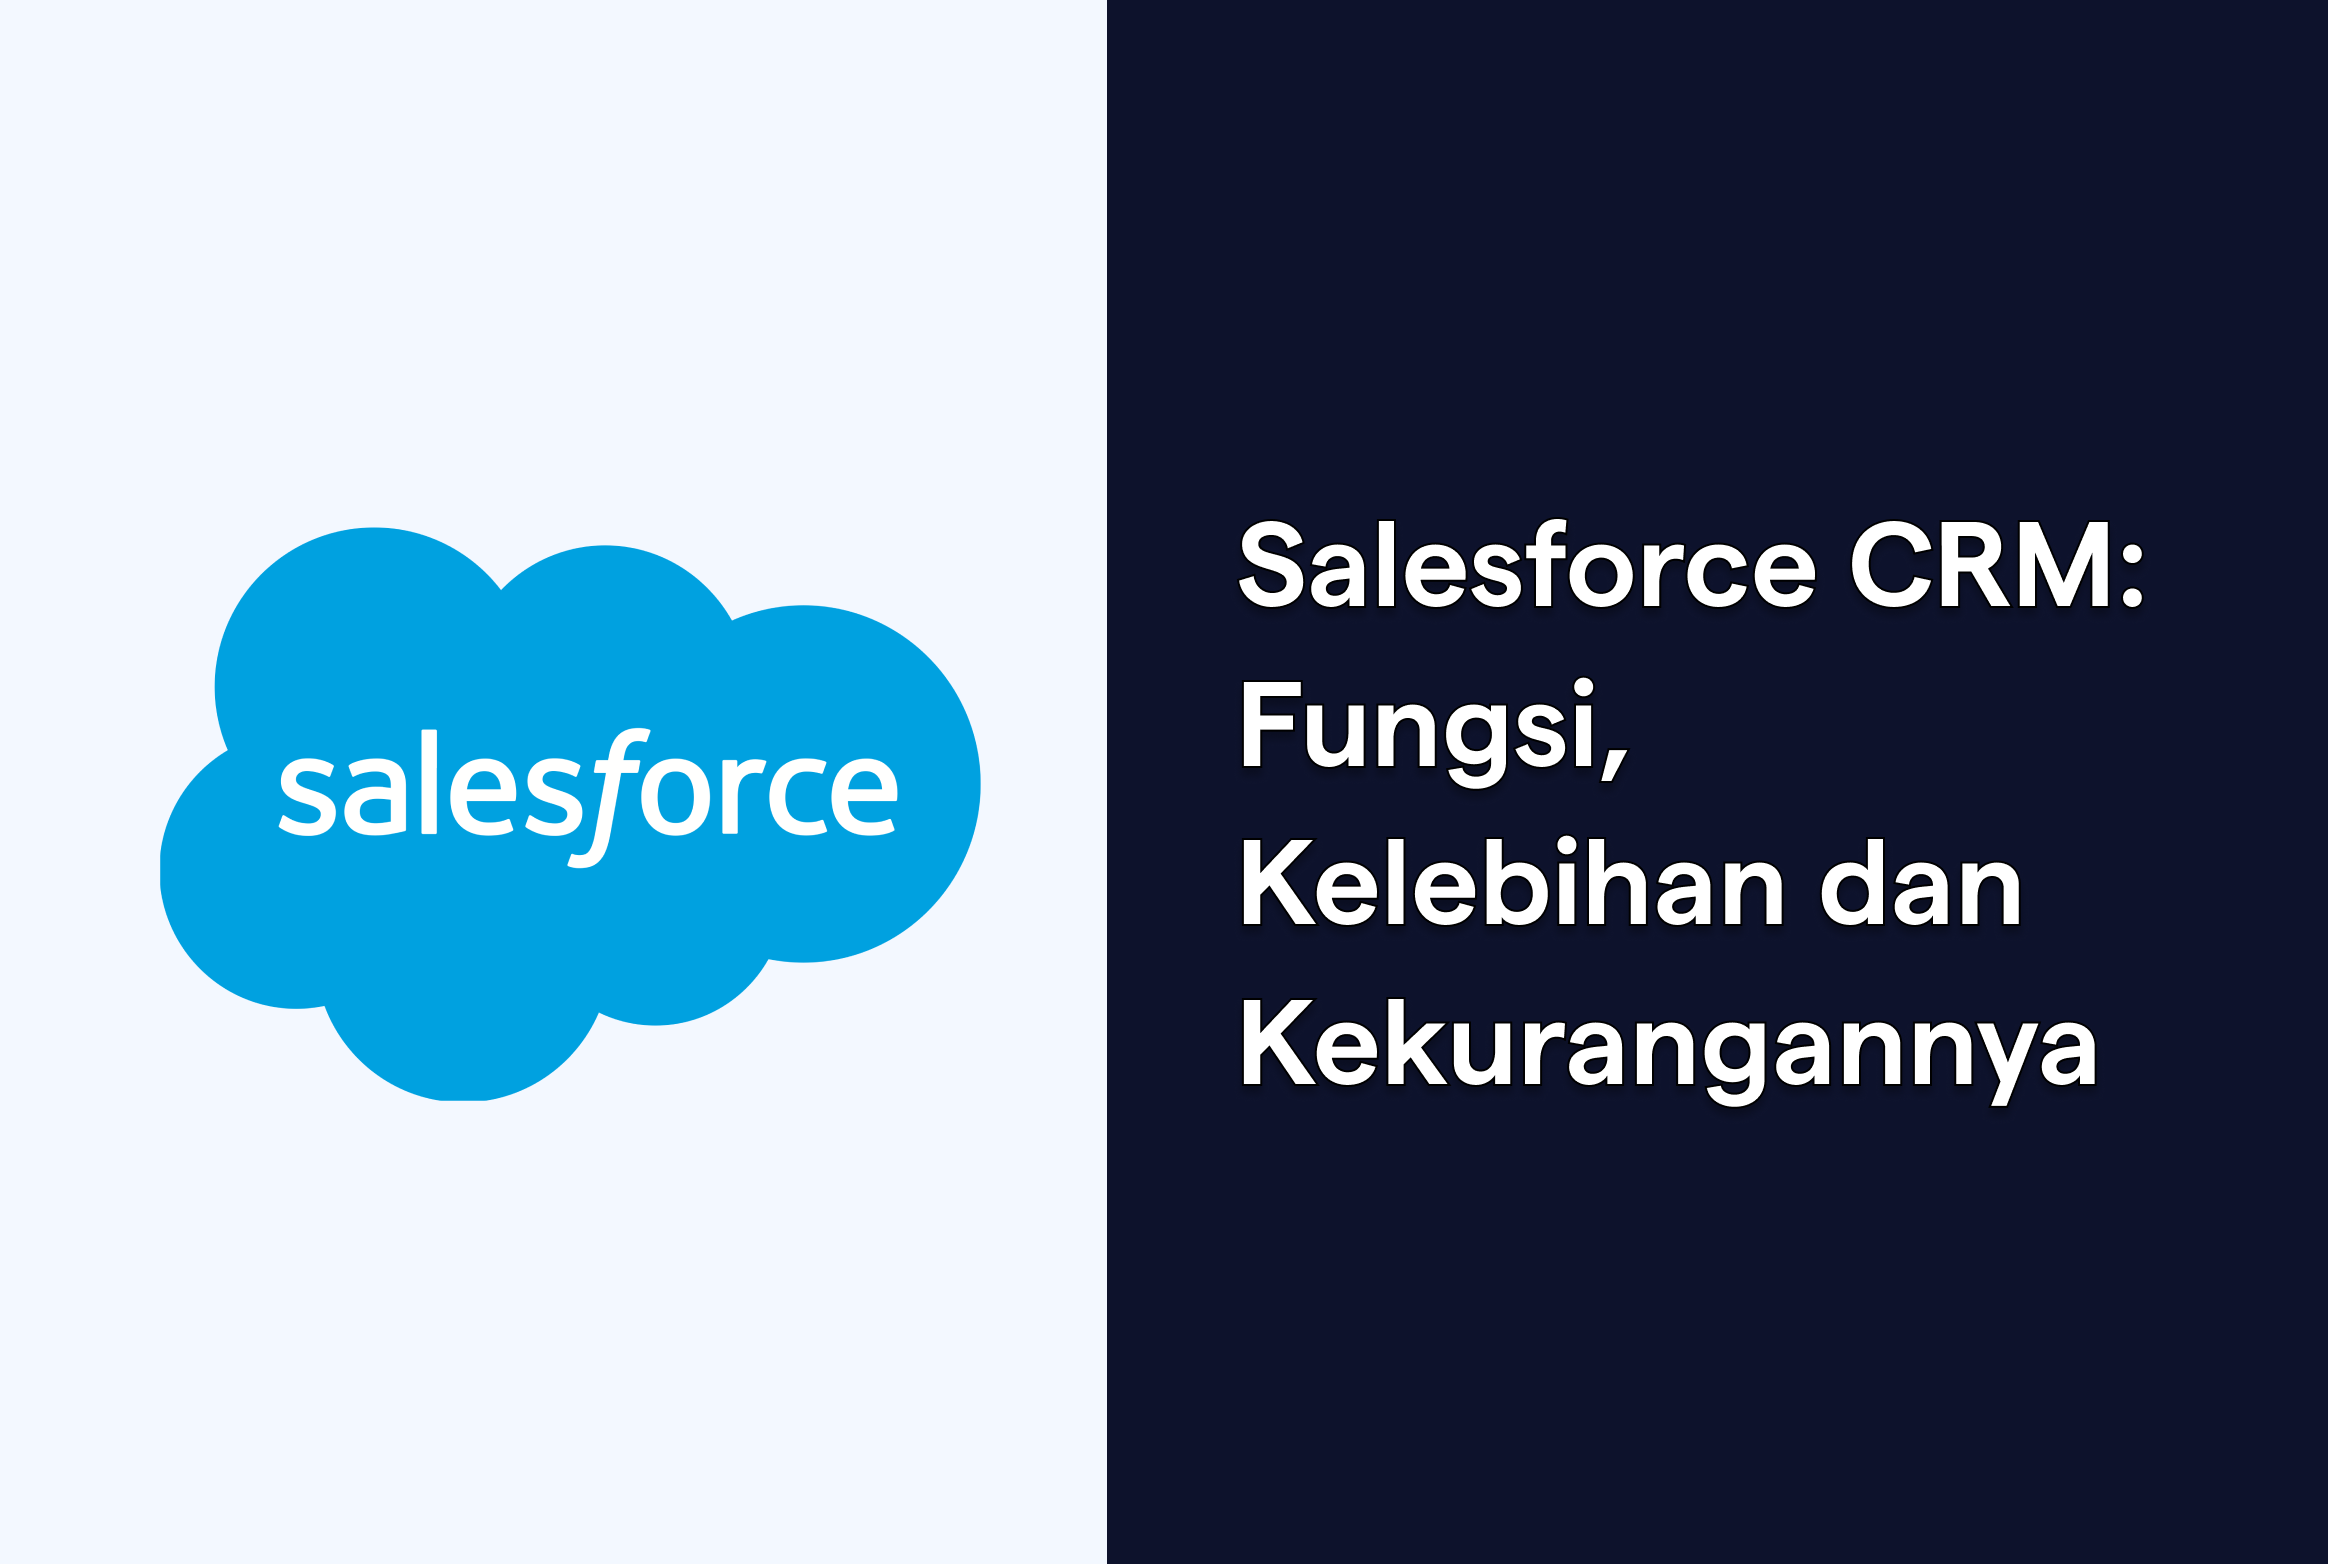 Salesforce CRM: Fungsi, Kelebihan dan Kekurangannya